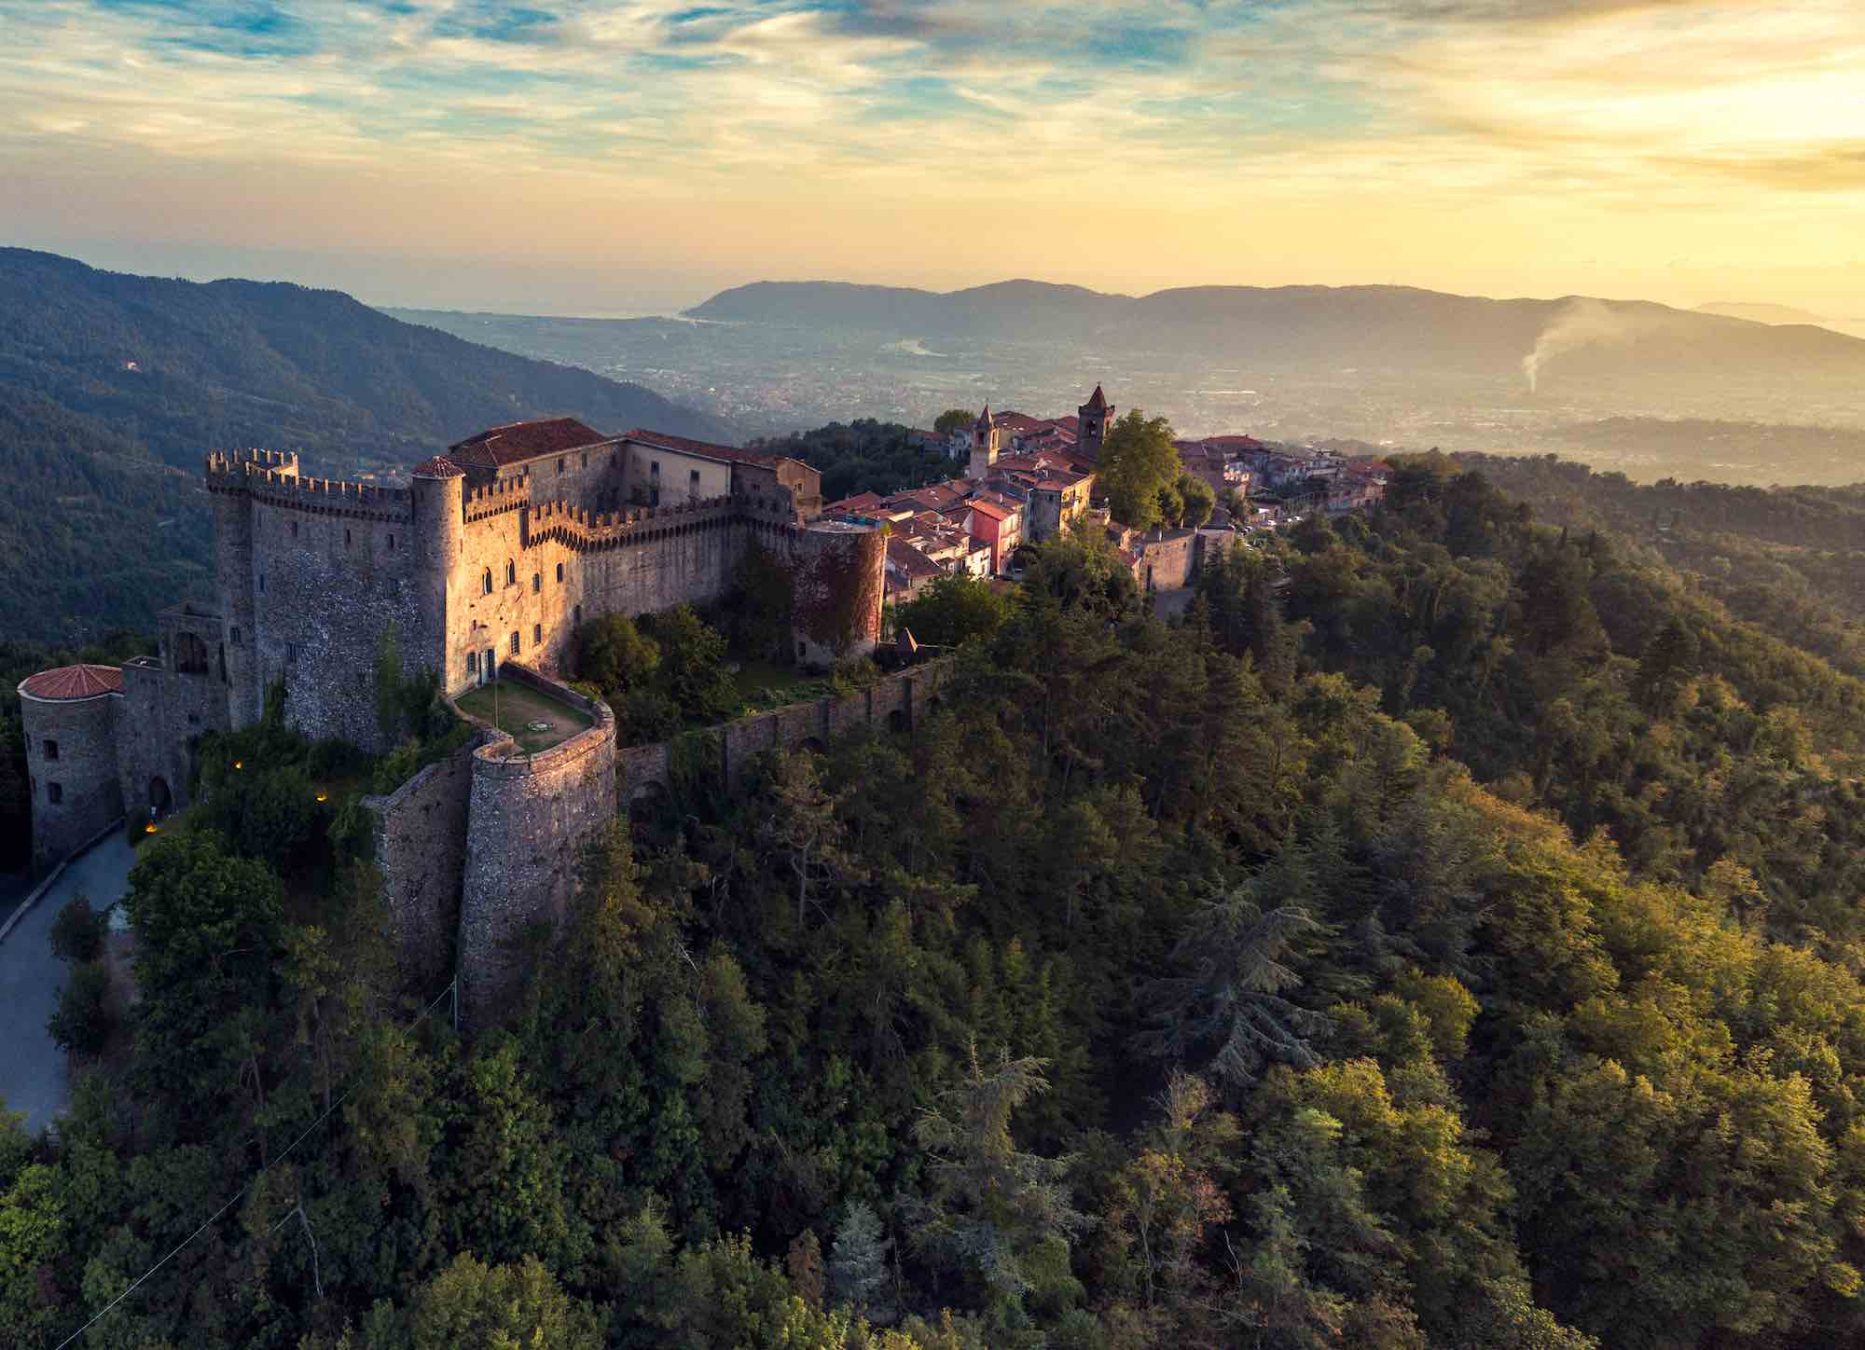 Il Castello Malaspina a Fosdinovo è uno dei più bei castelli in Toscana